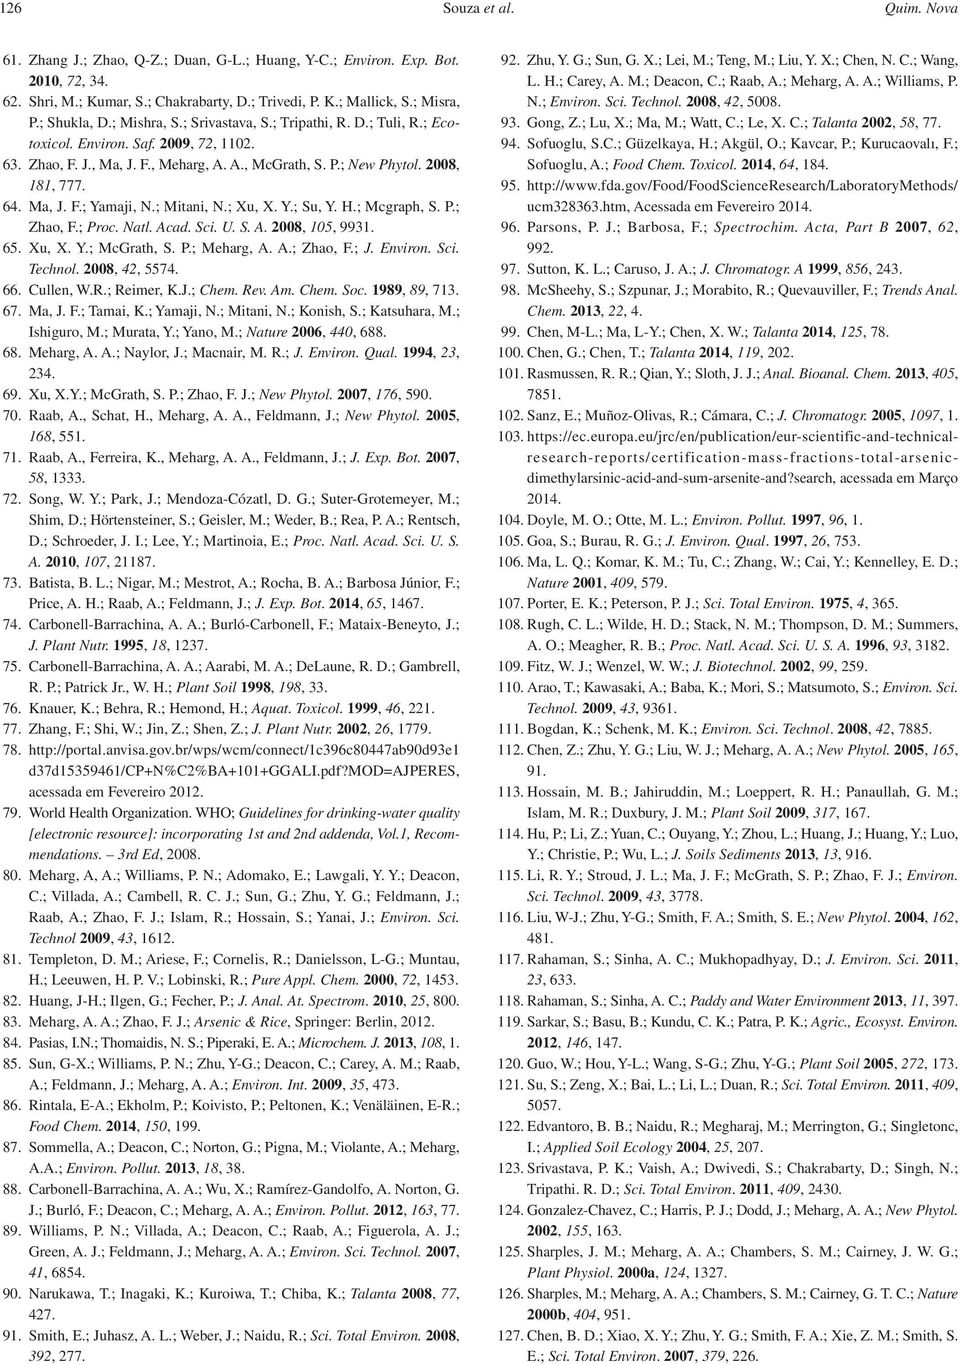 64. Ma, J. F.; Yamaji, N.; Mitani, N.; Xu, X. Y.; Su, Y. H.; Mcgraph, S. P.; Zhao, F.; Proc. Natl. Acad. Sci. U. S. A. 2008, 105, 9931. 65. Xu, X. Y.; McGrath, S. P.; Meharg, A. A.; Zhao, F.; J.